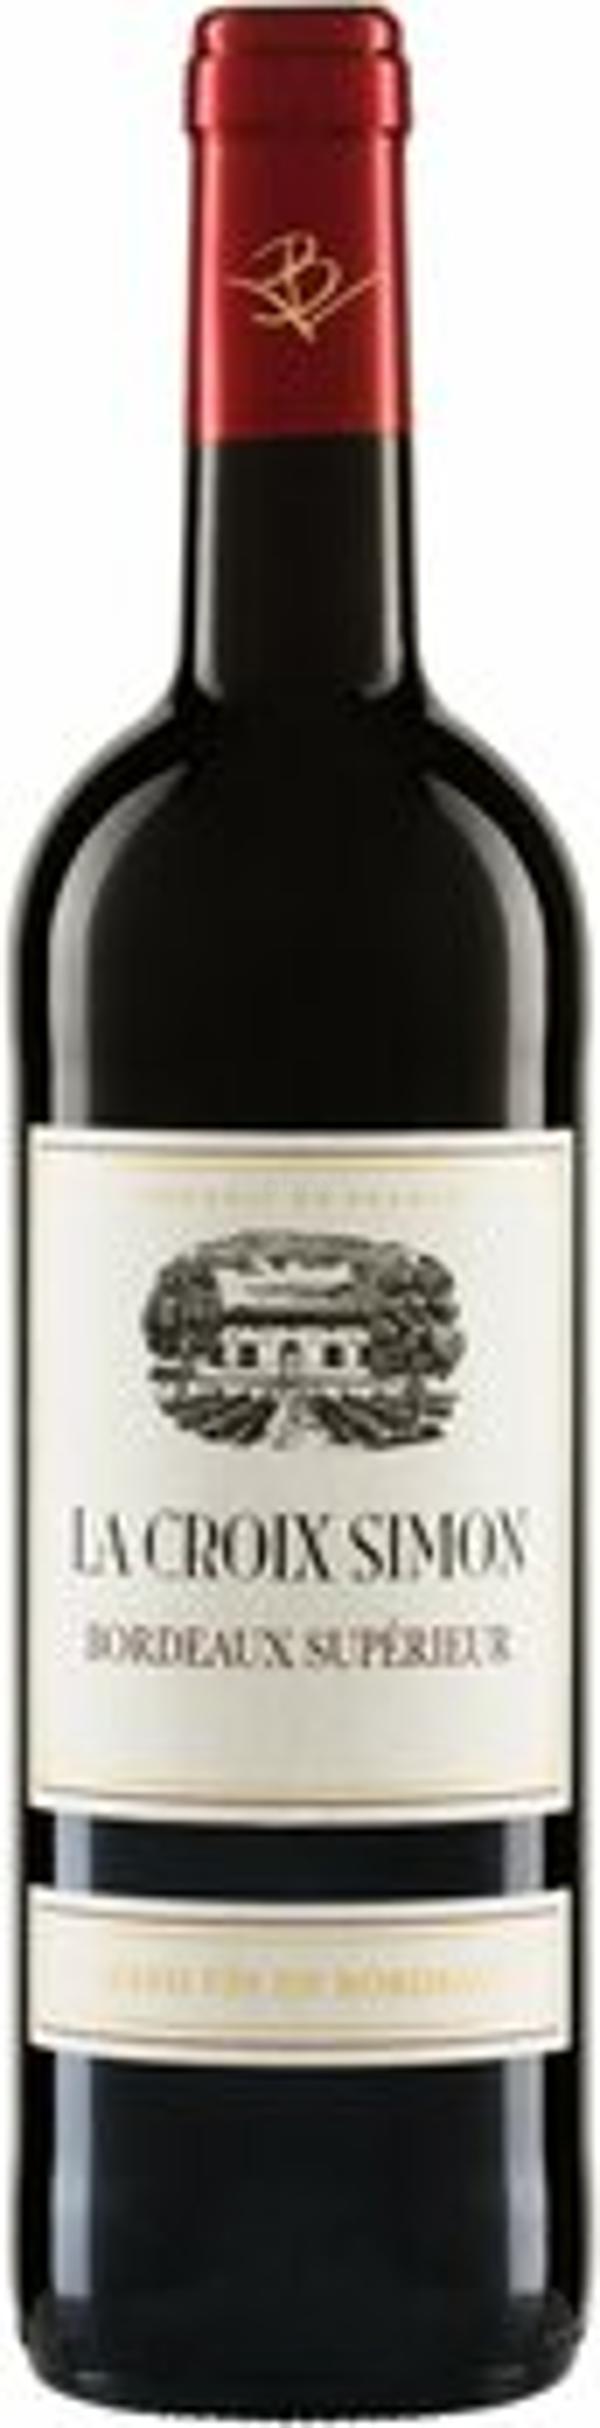 Produktfoto zu La Croix Simon Bordeaux Supérieur Rouge, Rotwein trocken 0,75l